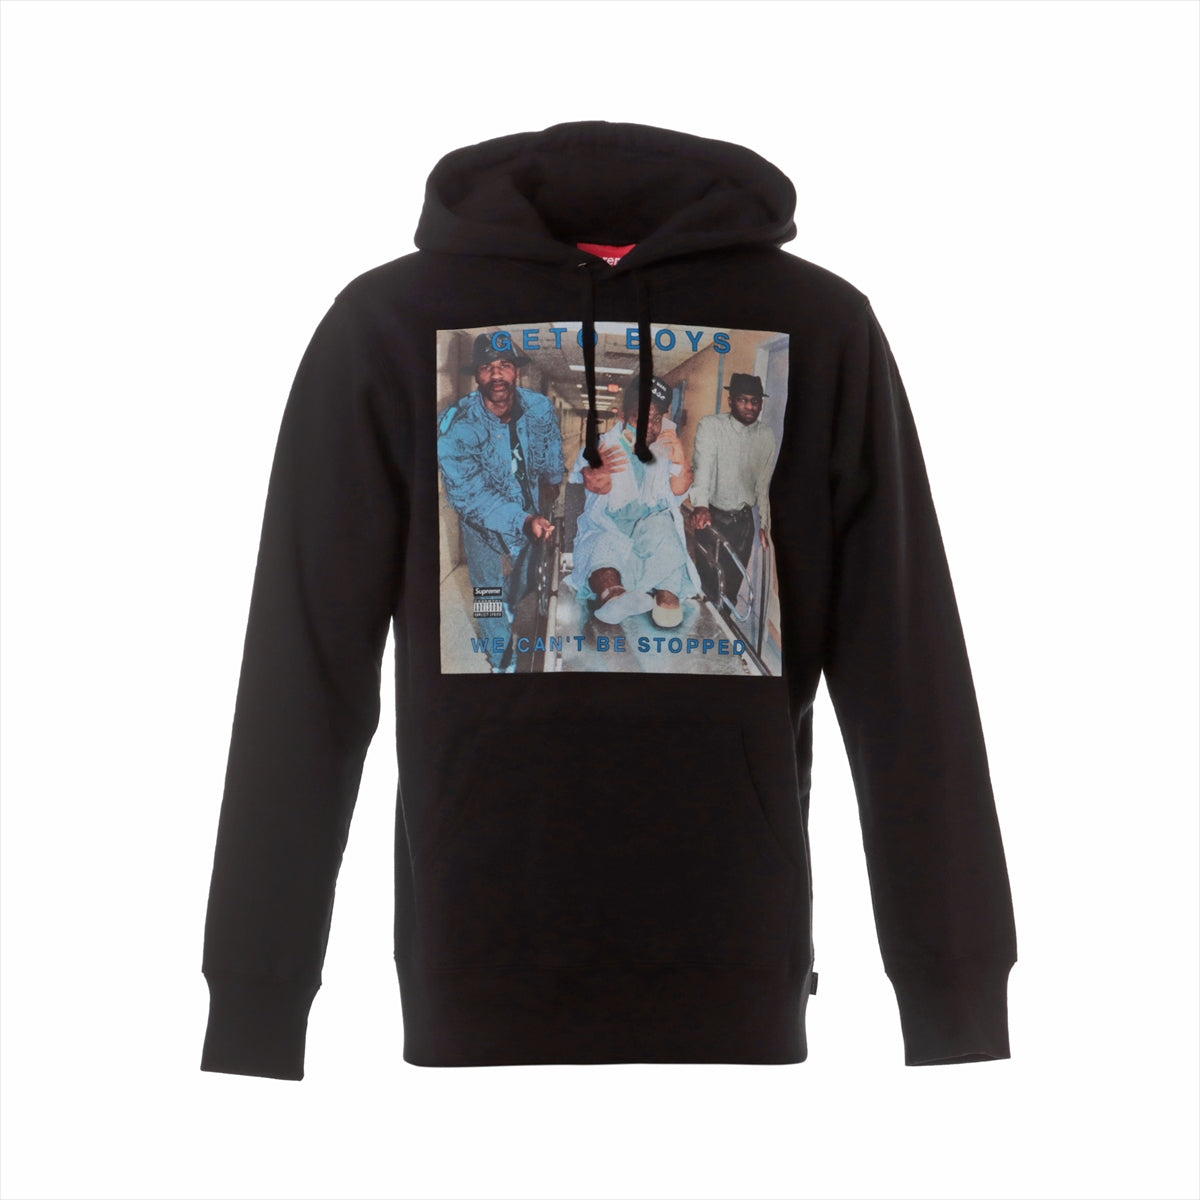 シュプリーム 17SS コットン パーカー M メンズ ブラック  Rap-A-Lot Records Geto Boys Hooded Sweatshirt/S